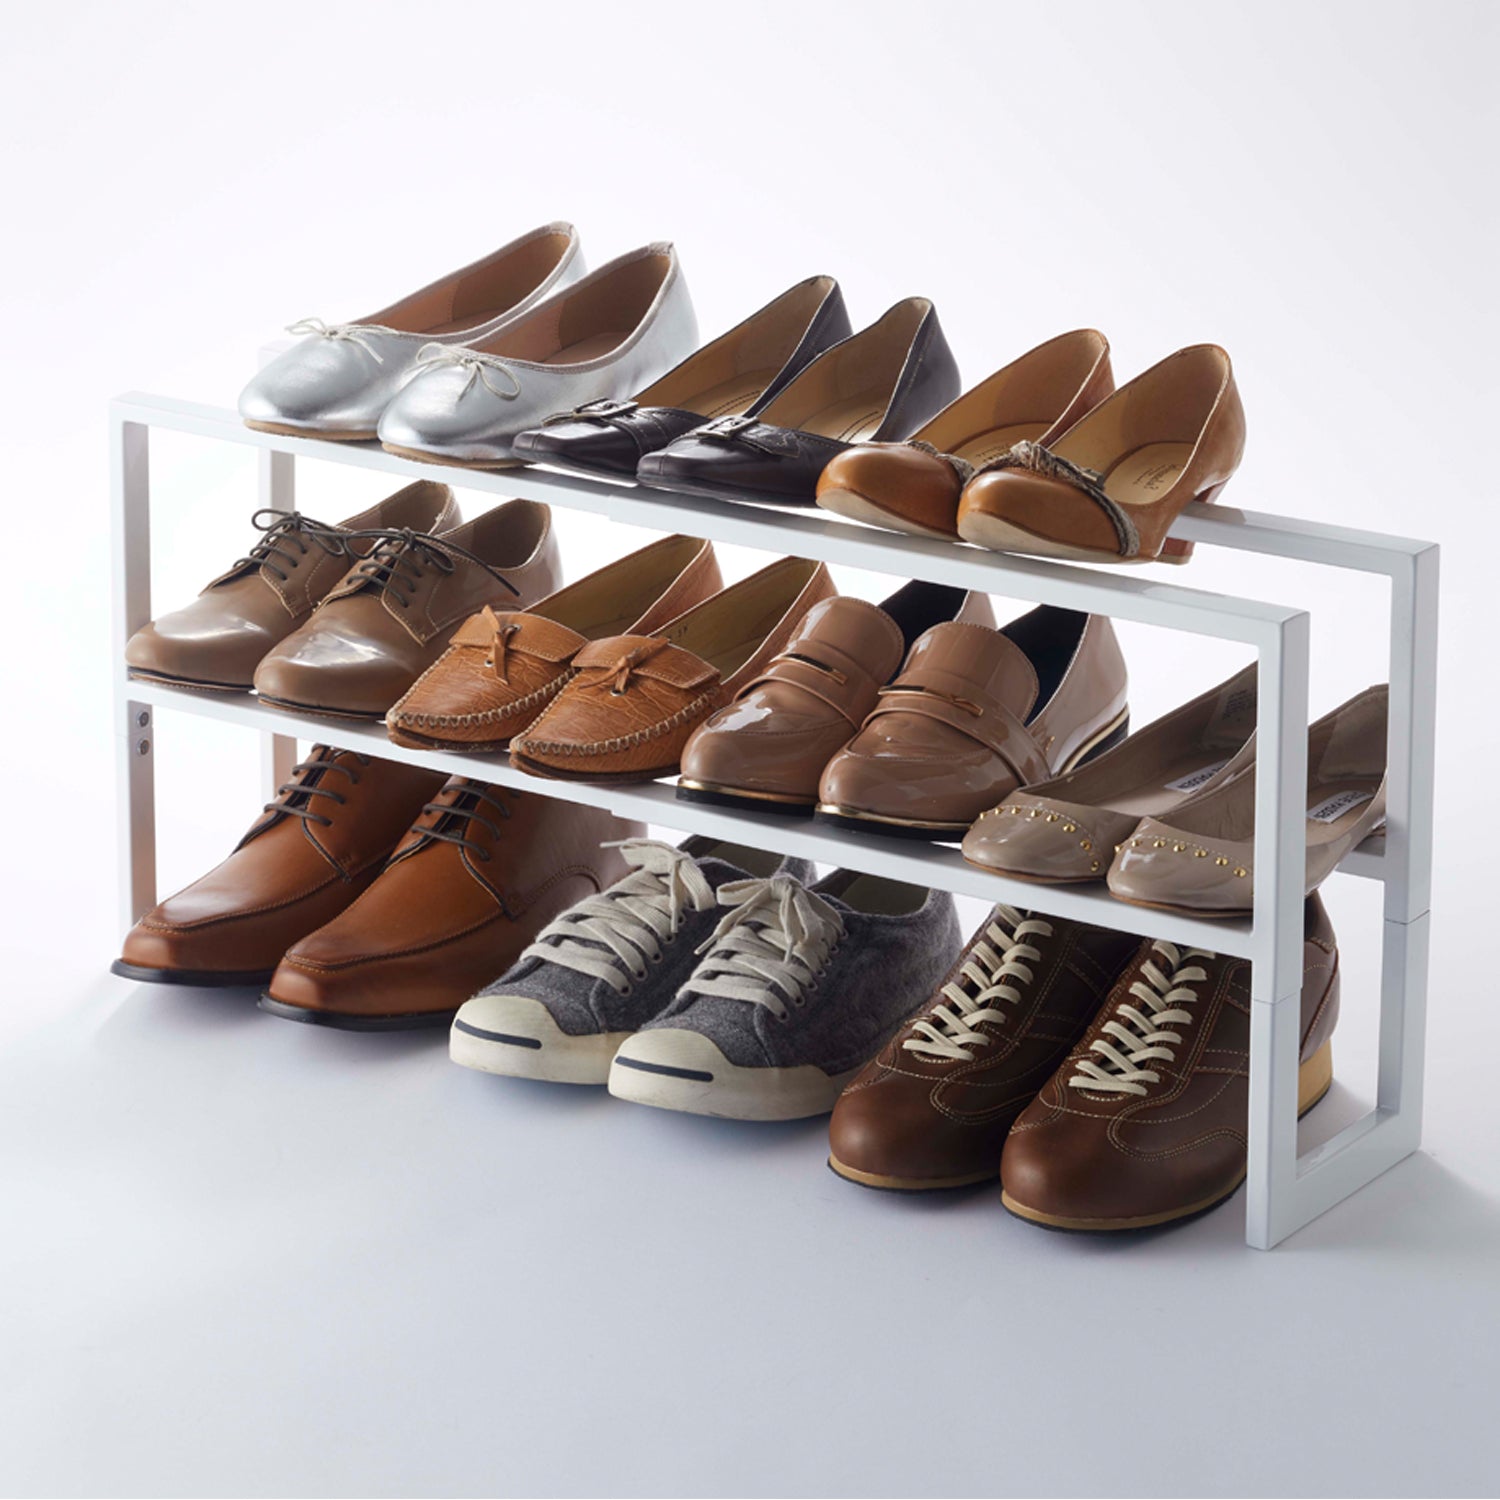 Rangement pour chaussures en bois et métal blanc Tower - Yamazaki